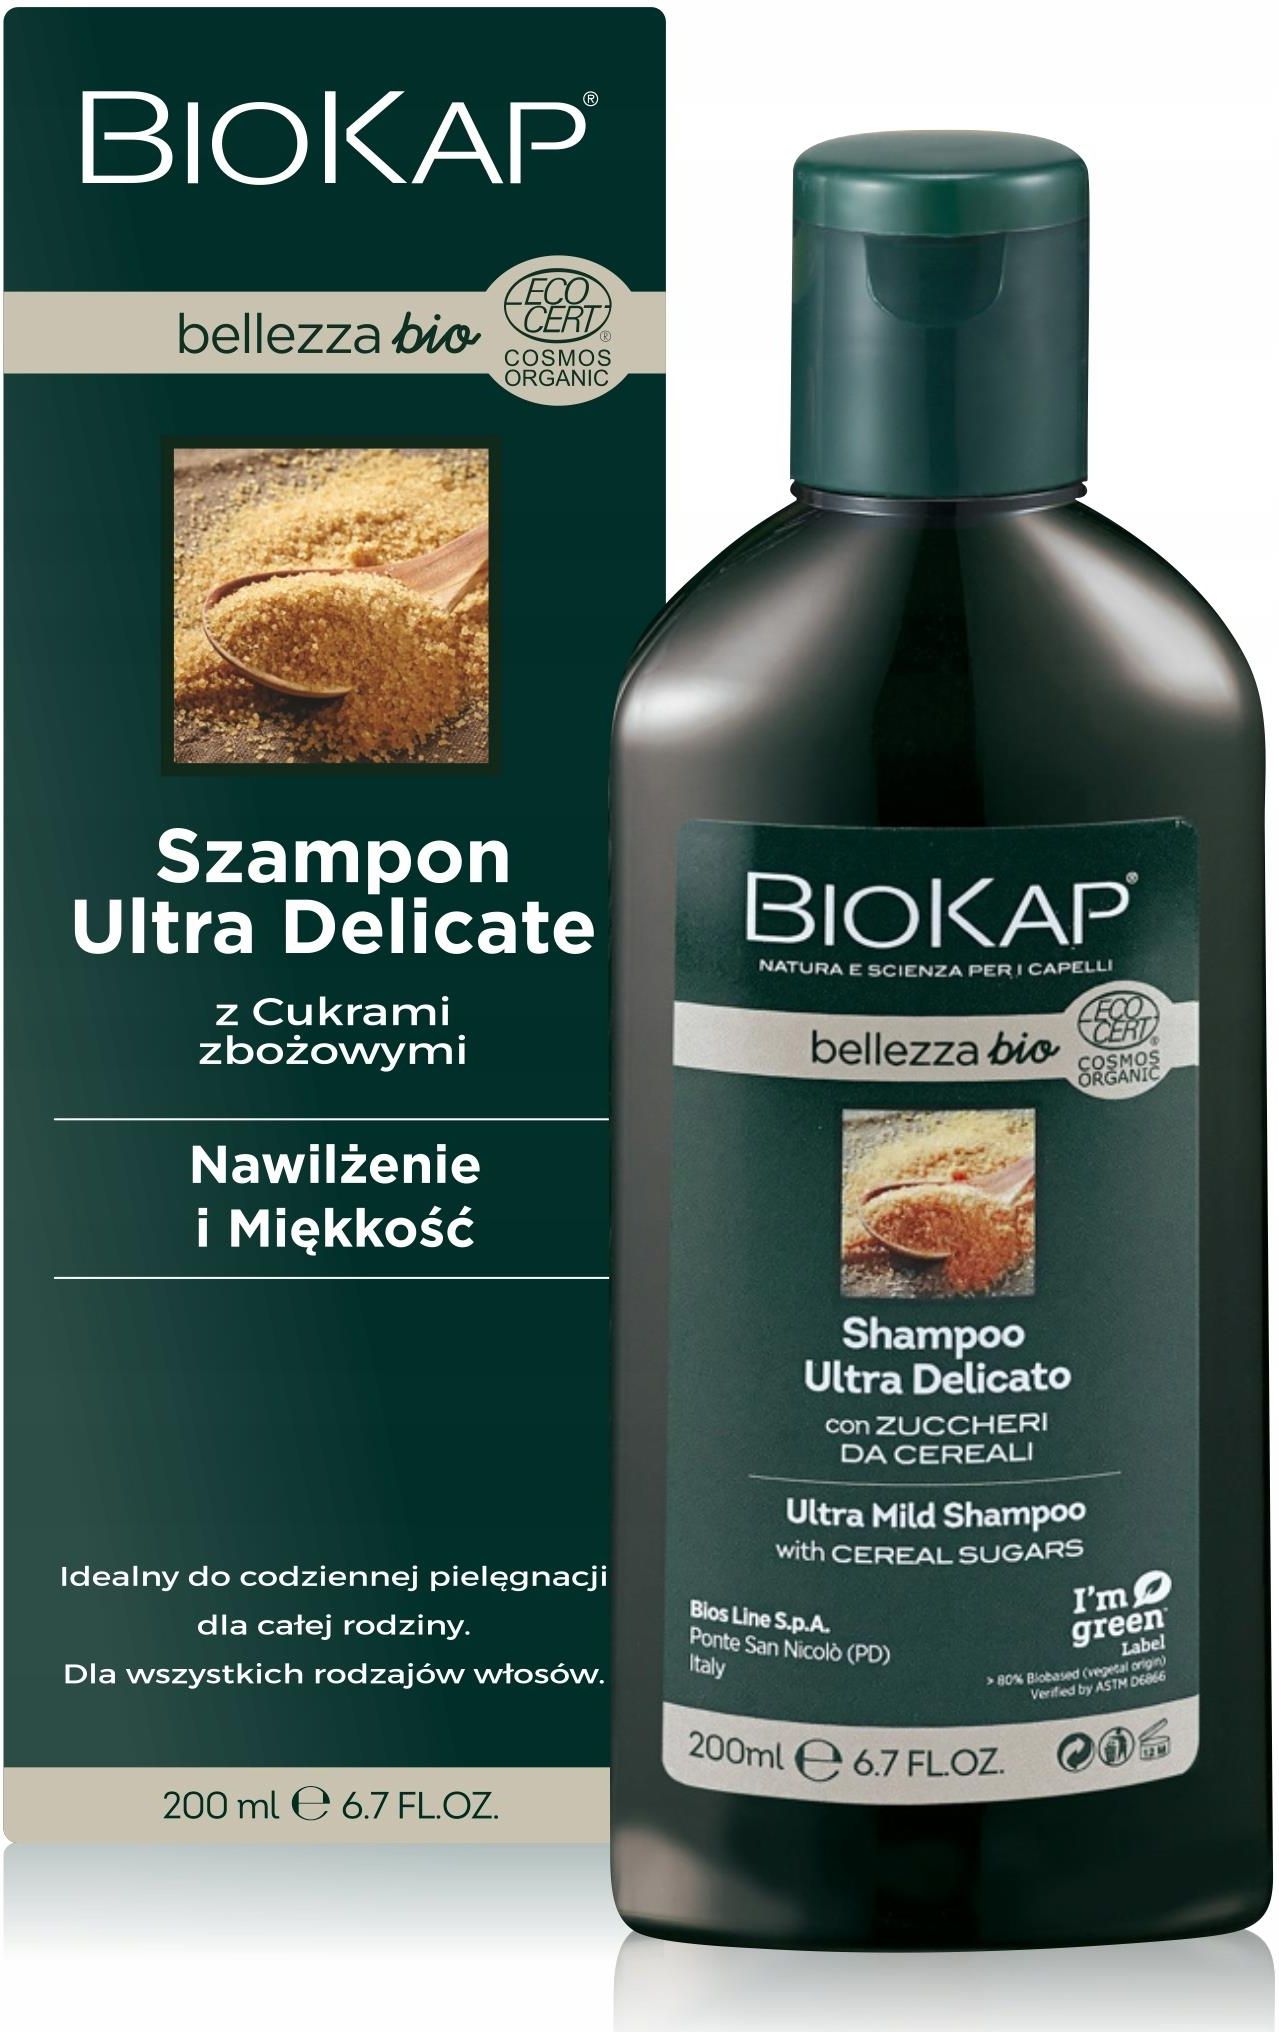 biokap belleza organiczny szampon do włosów żel do ciała